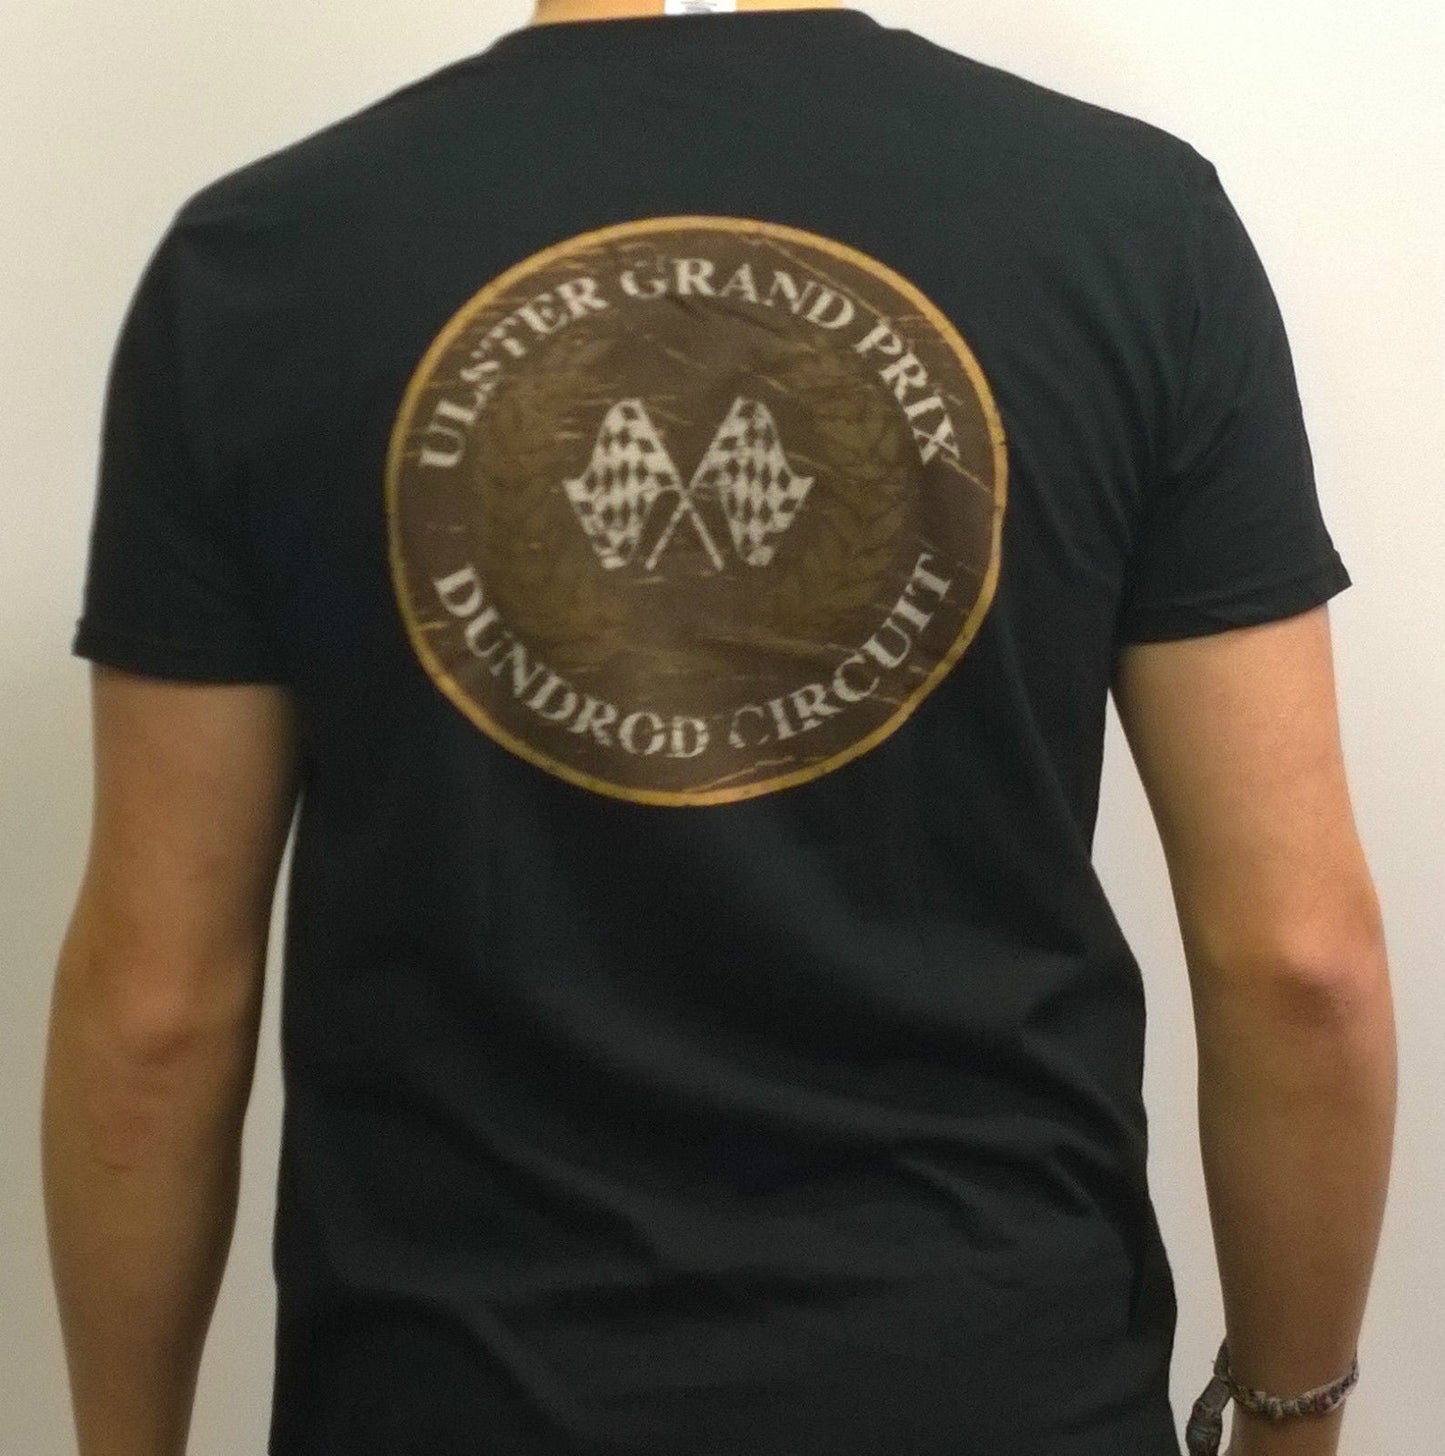 Official UlsterGP Legends Kid's T Shirt